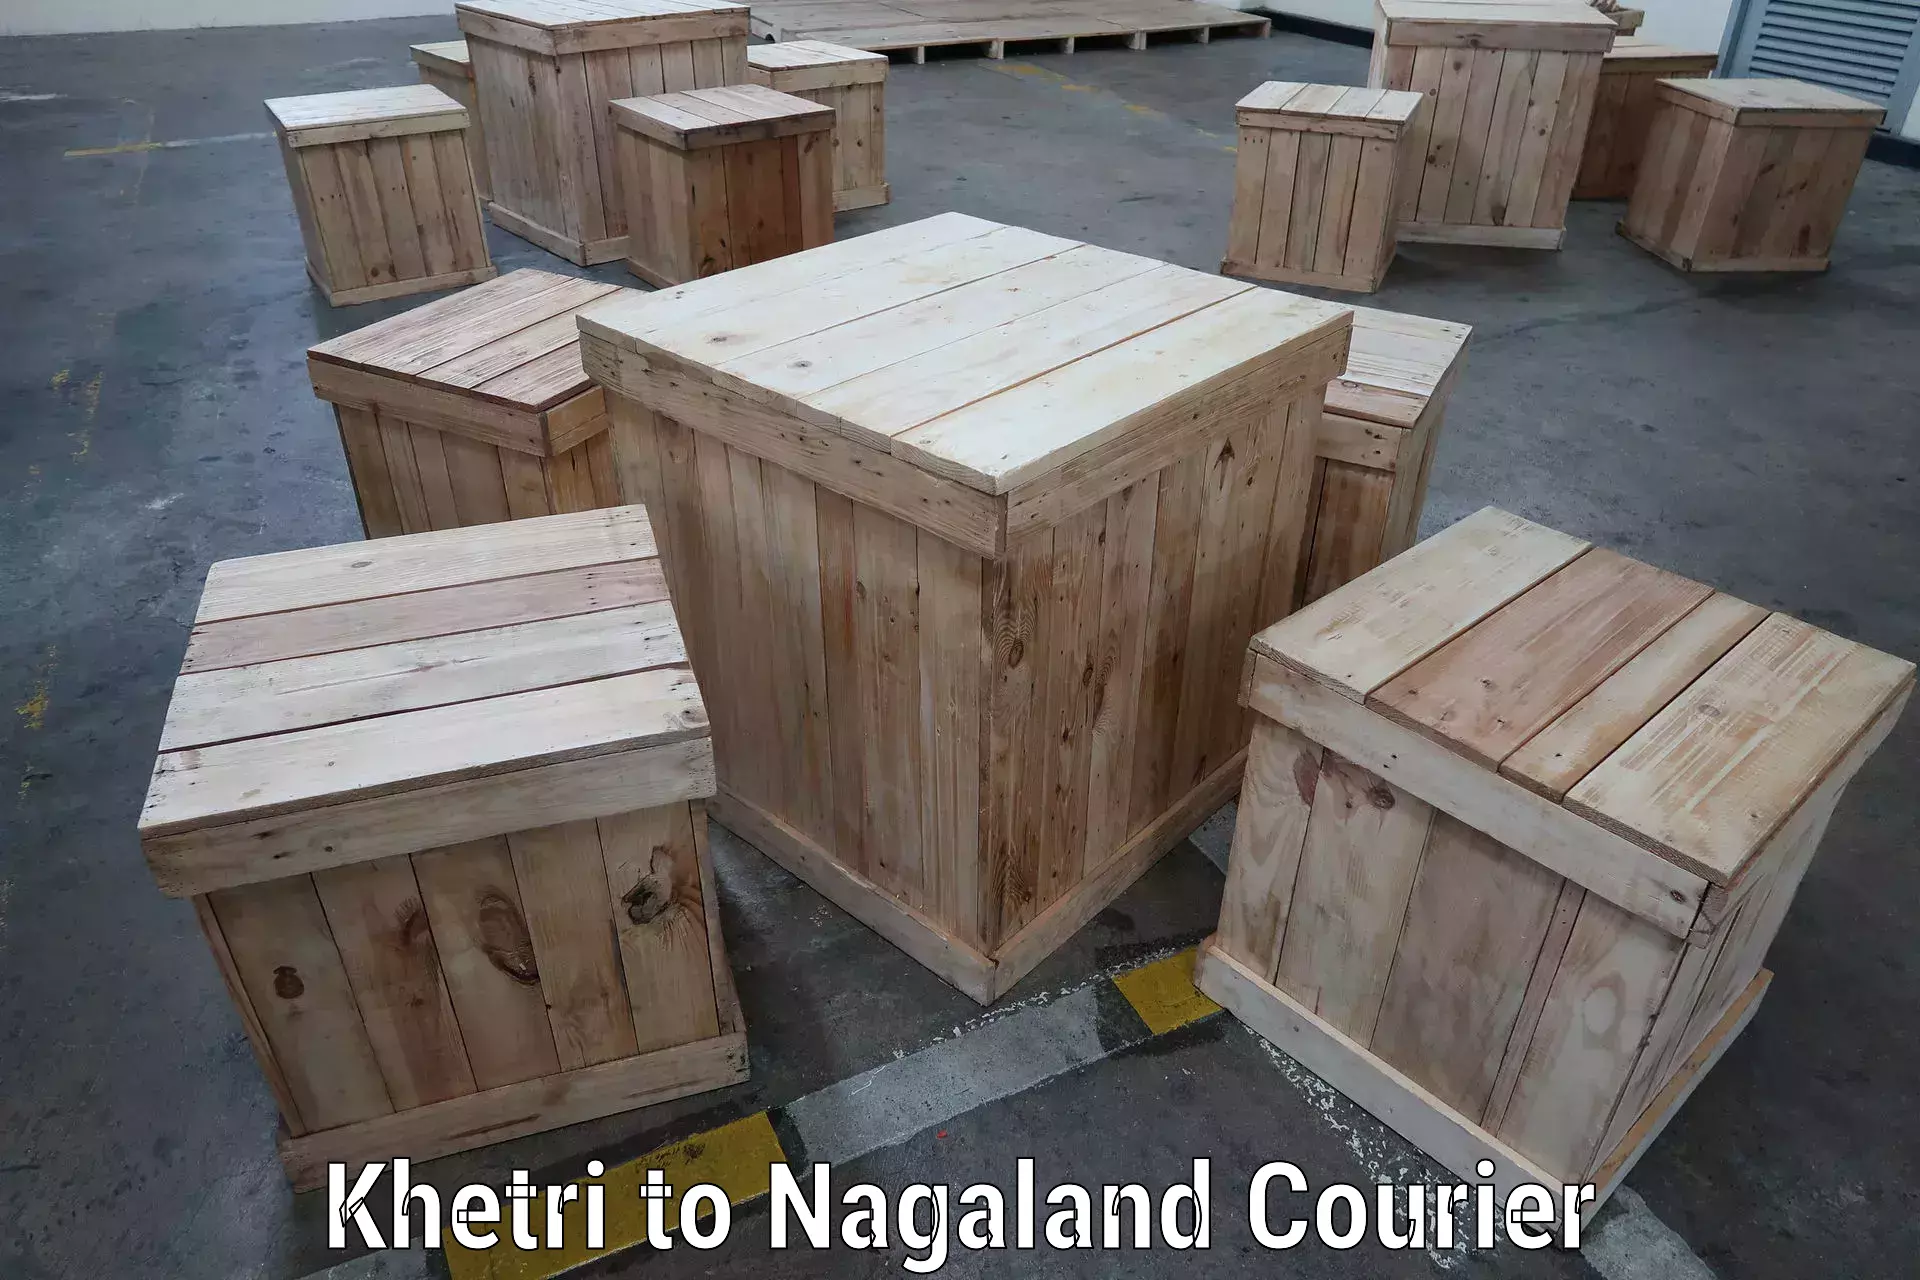 Door-to-door freight service in Khetri to Nagaland